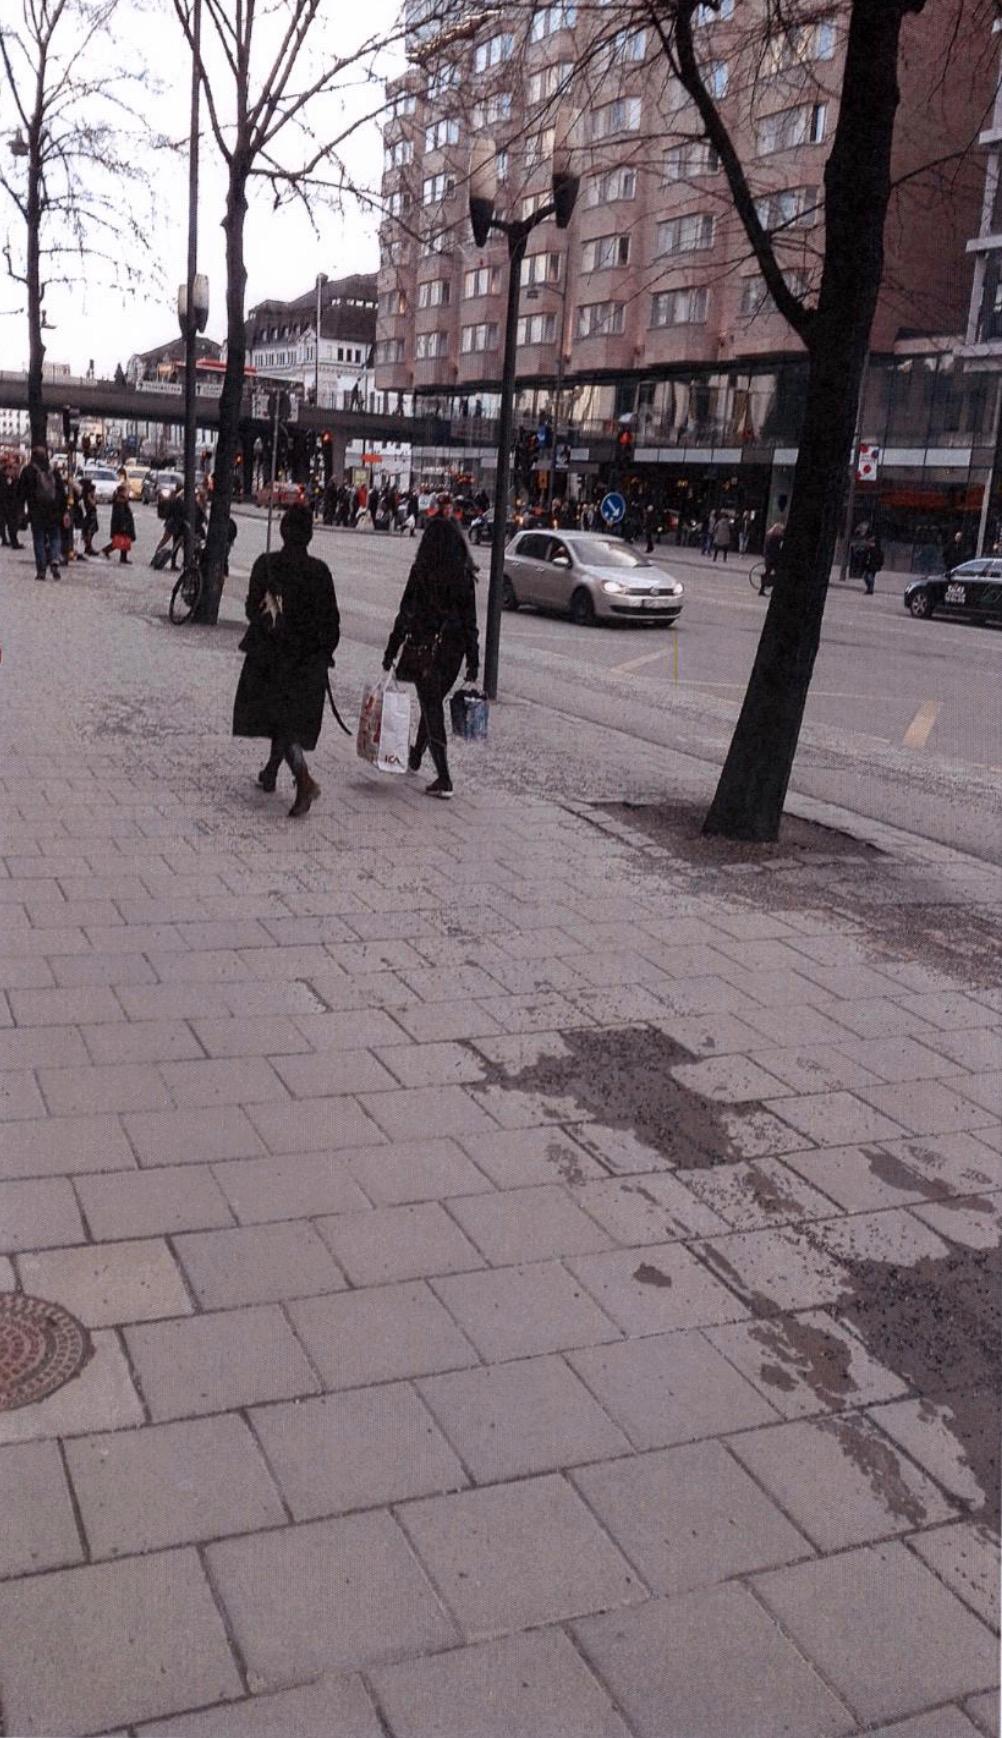 Akilovs bilder från Vasagatan, centrala Stockholm.